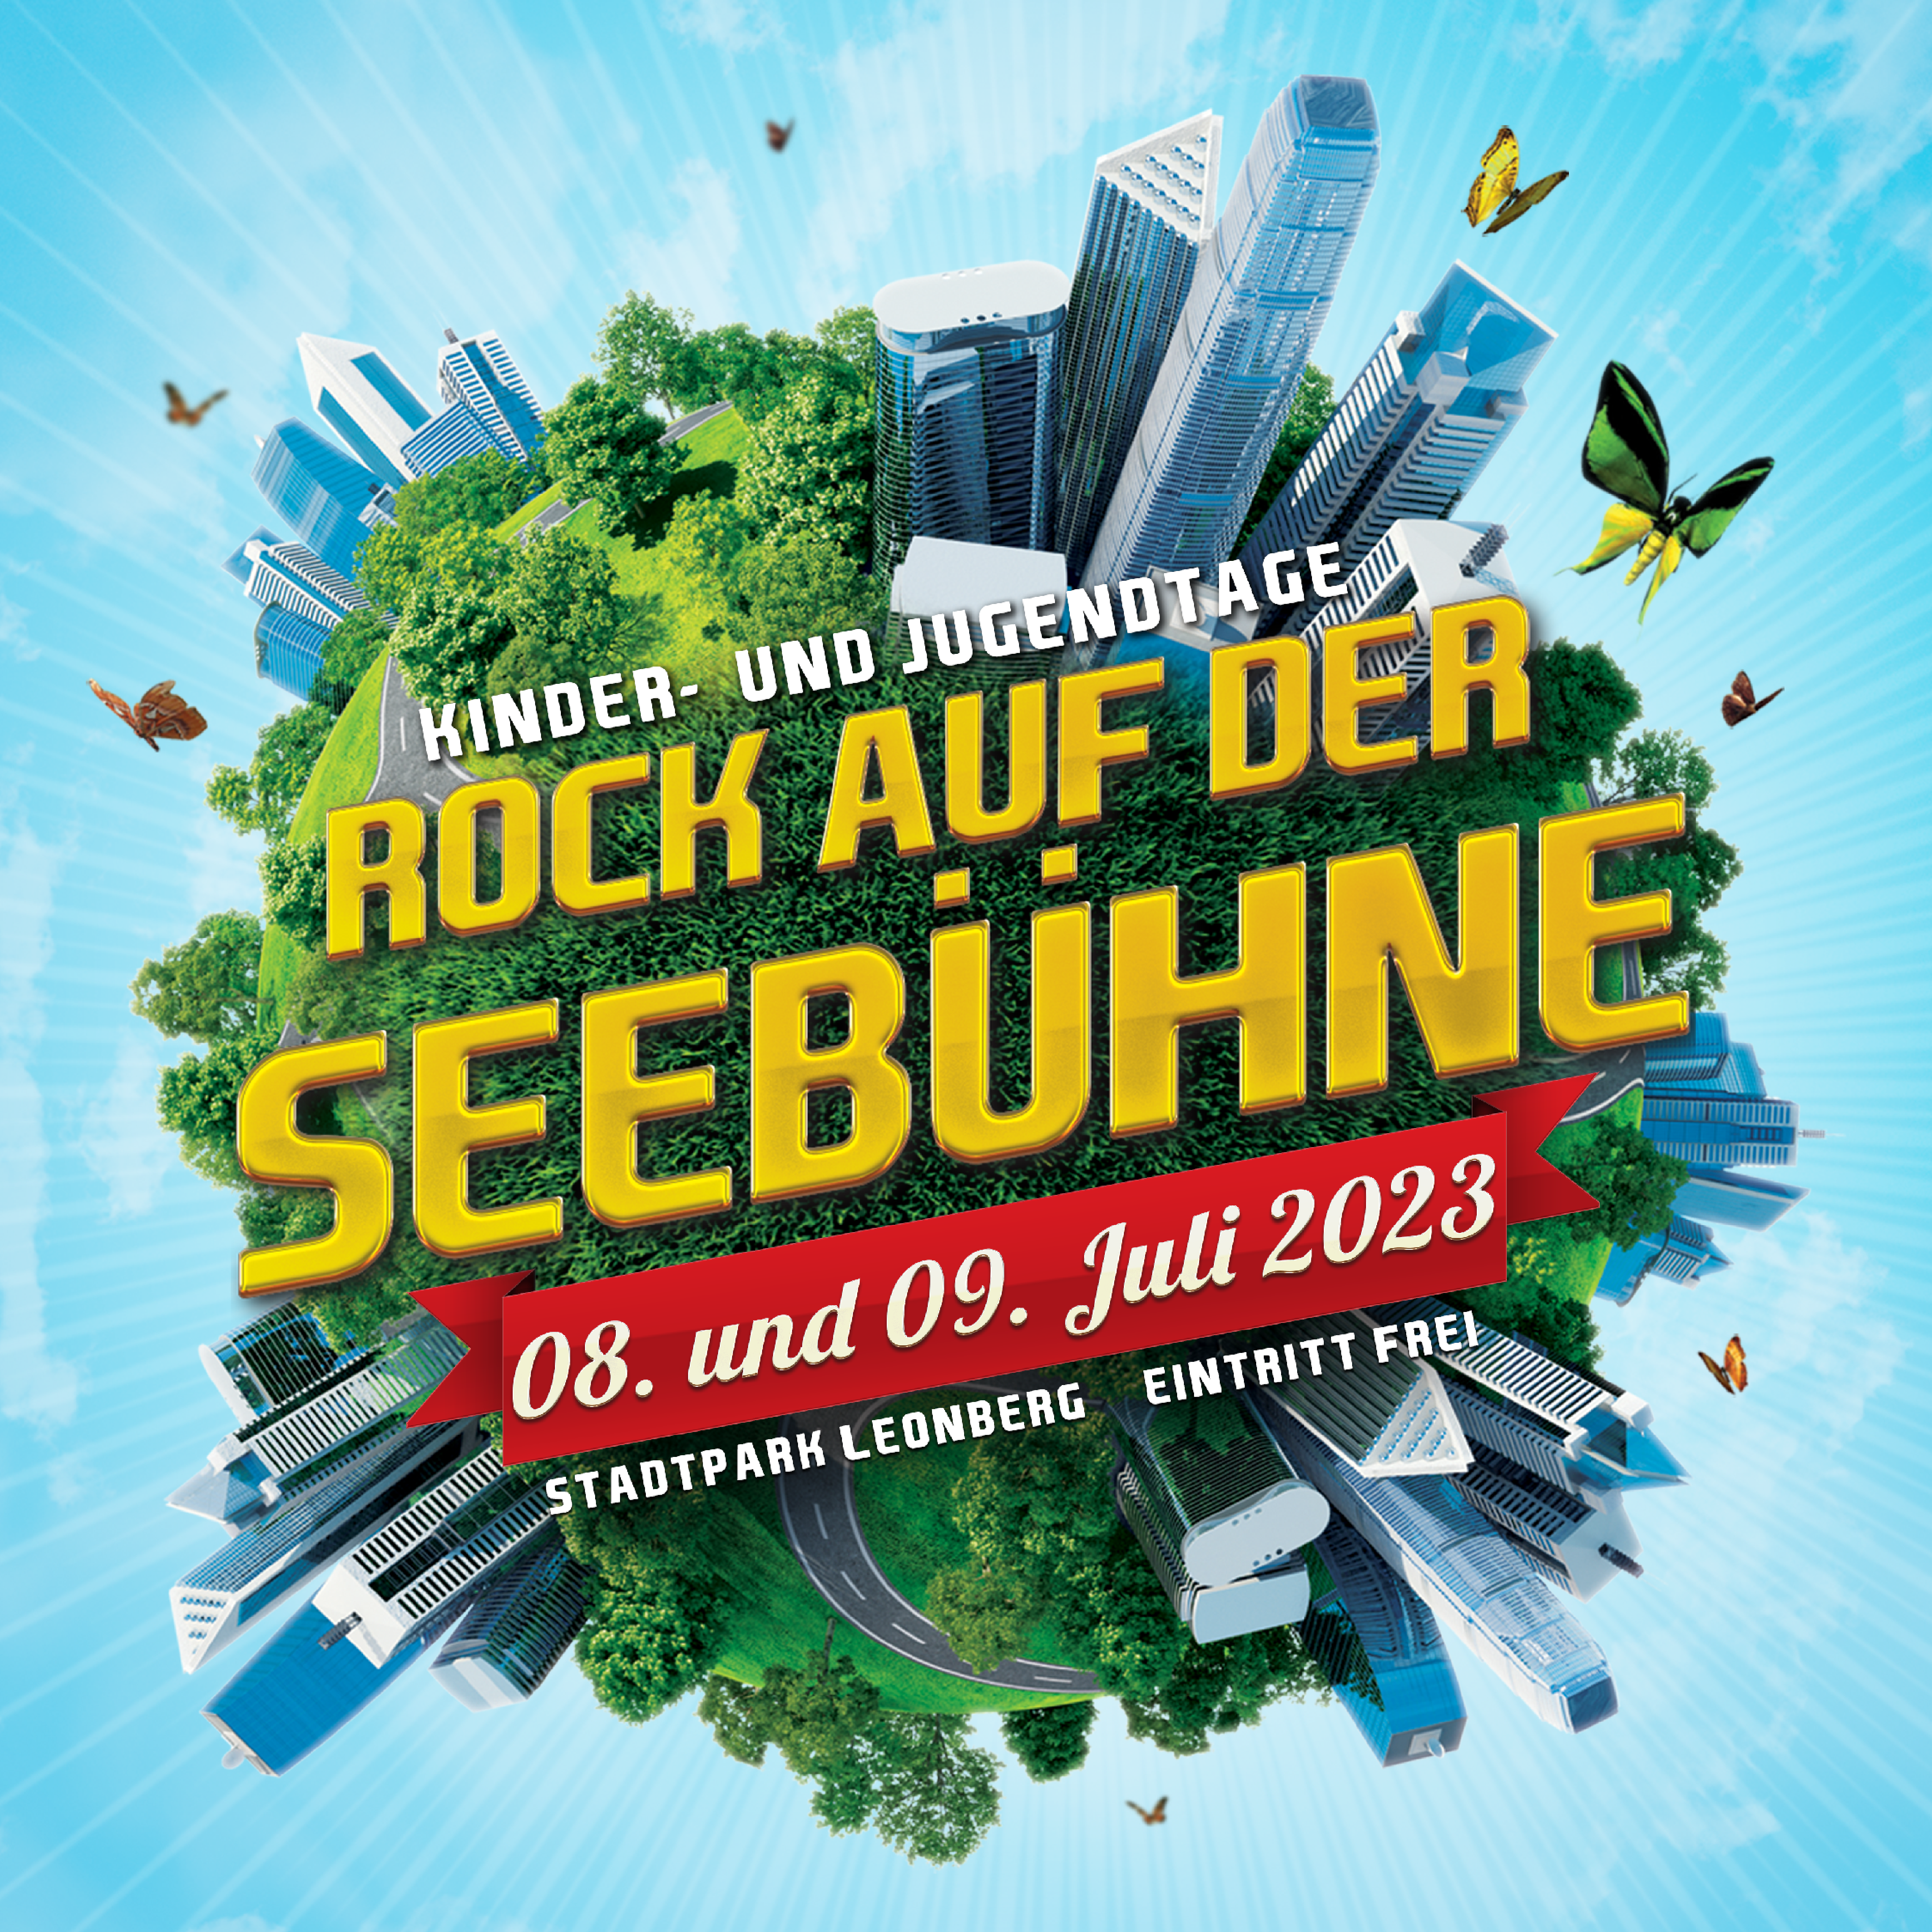 Rock auf der Seebühne | 08. & 09. Juli 2023 | Leonberg Stadtpark